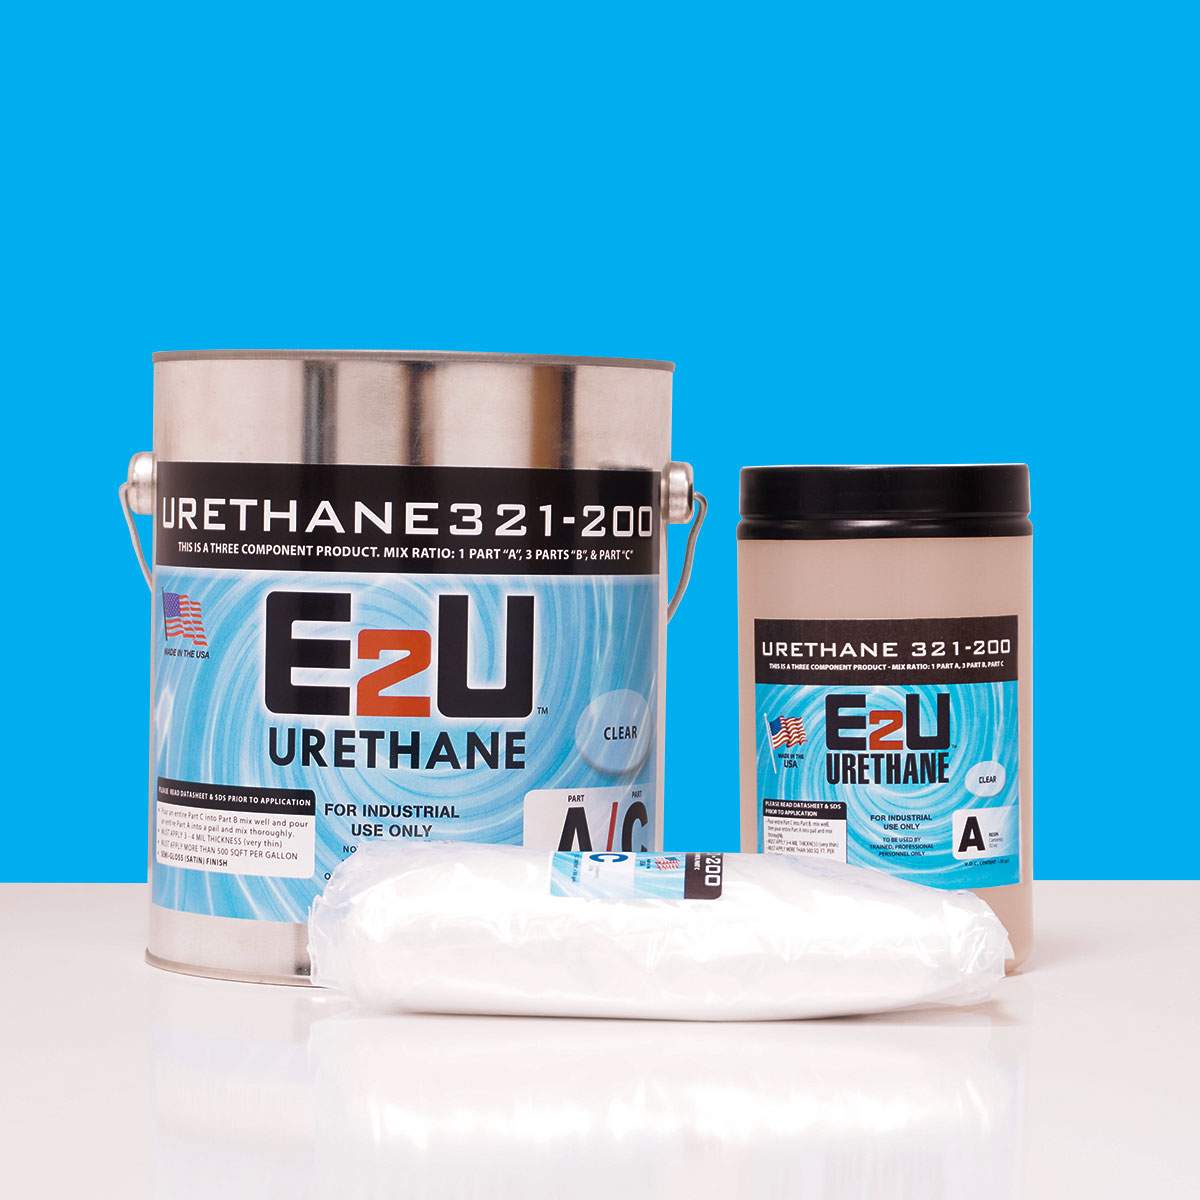 Urethane-321-200